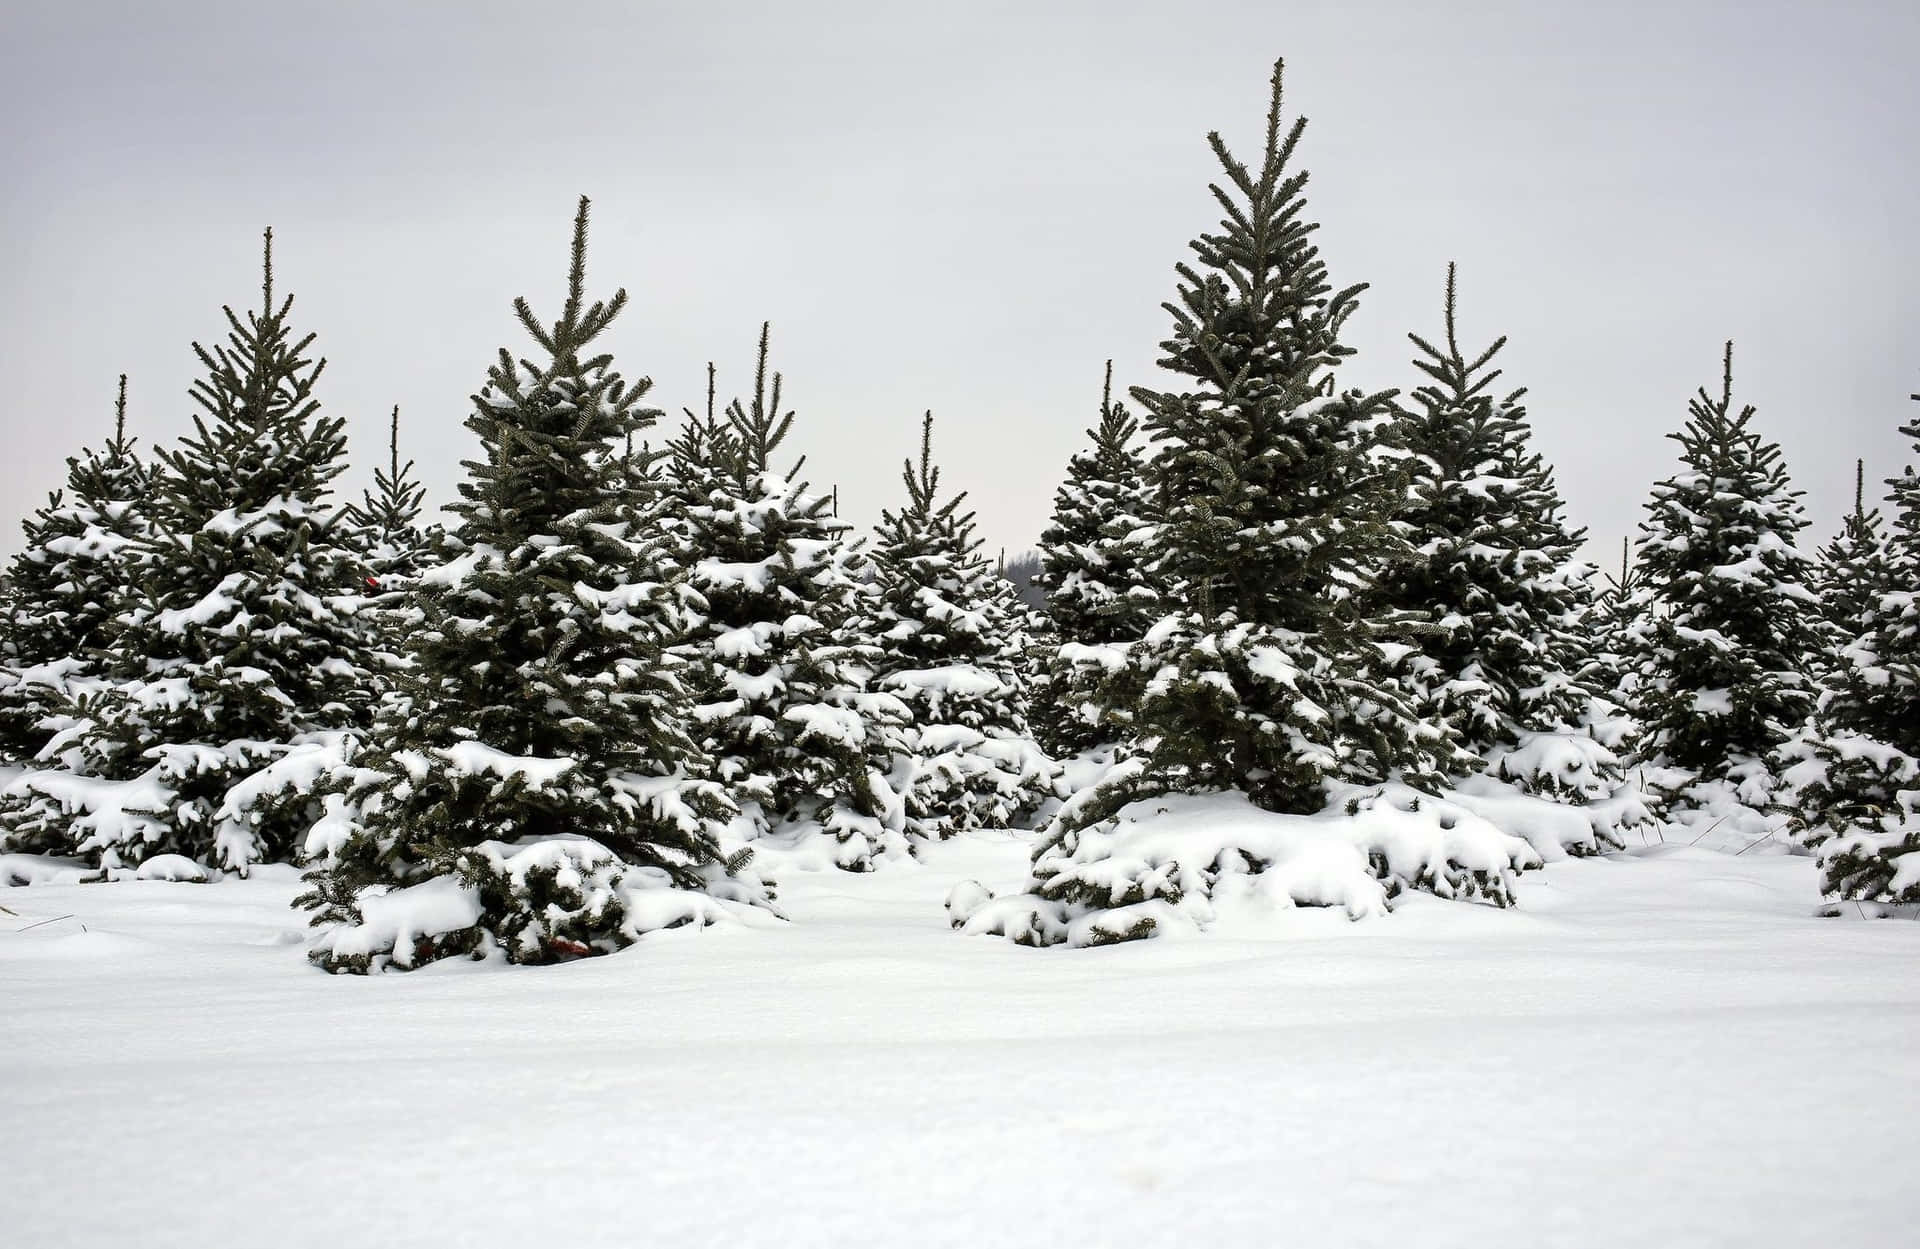 Imagende Un Árbol De Navidad En Una Plantación De Nieve.